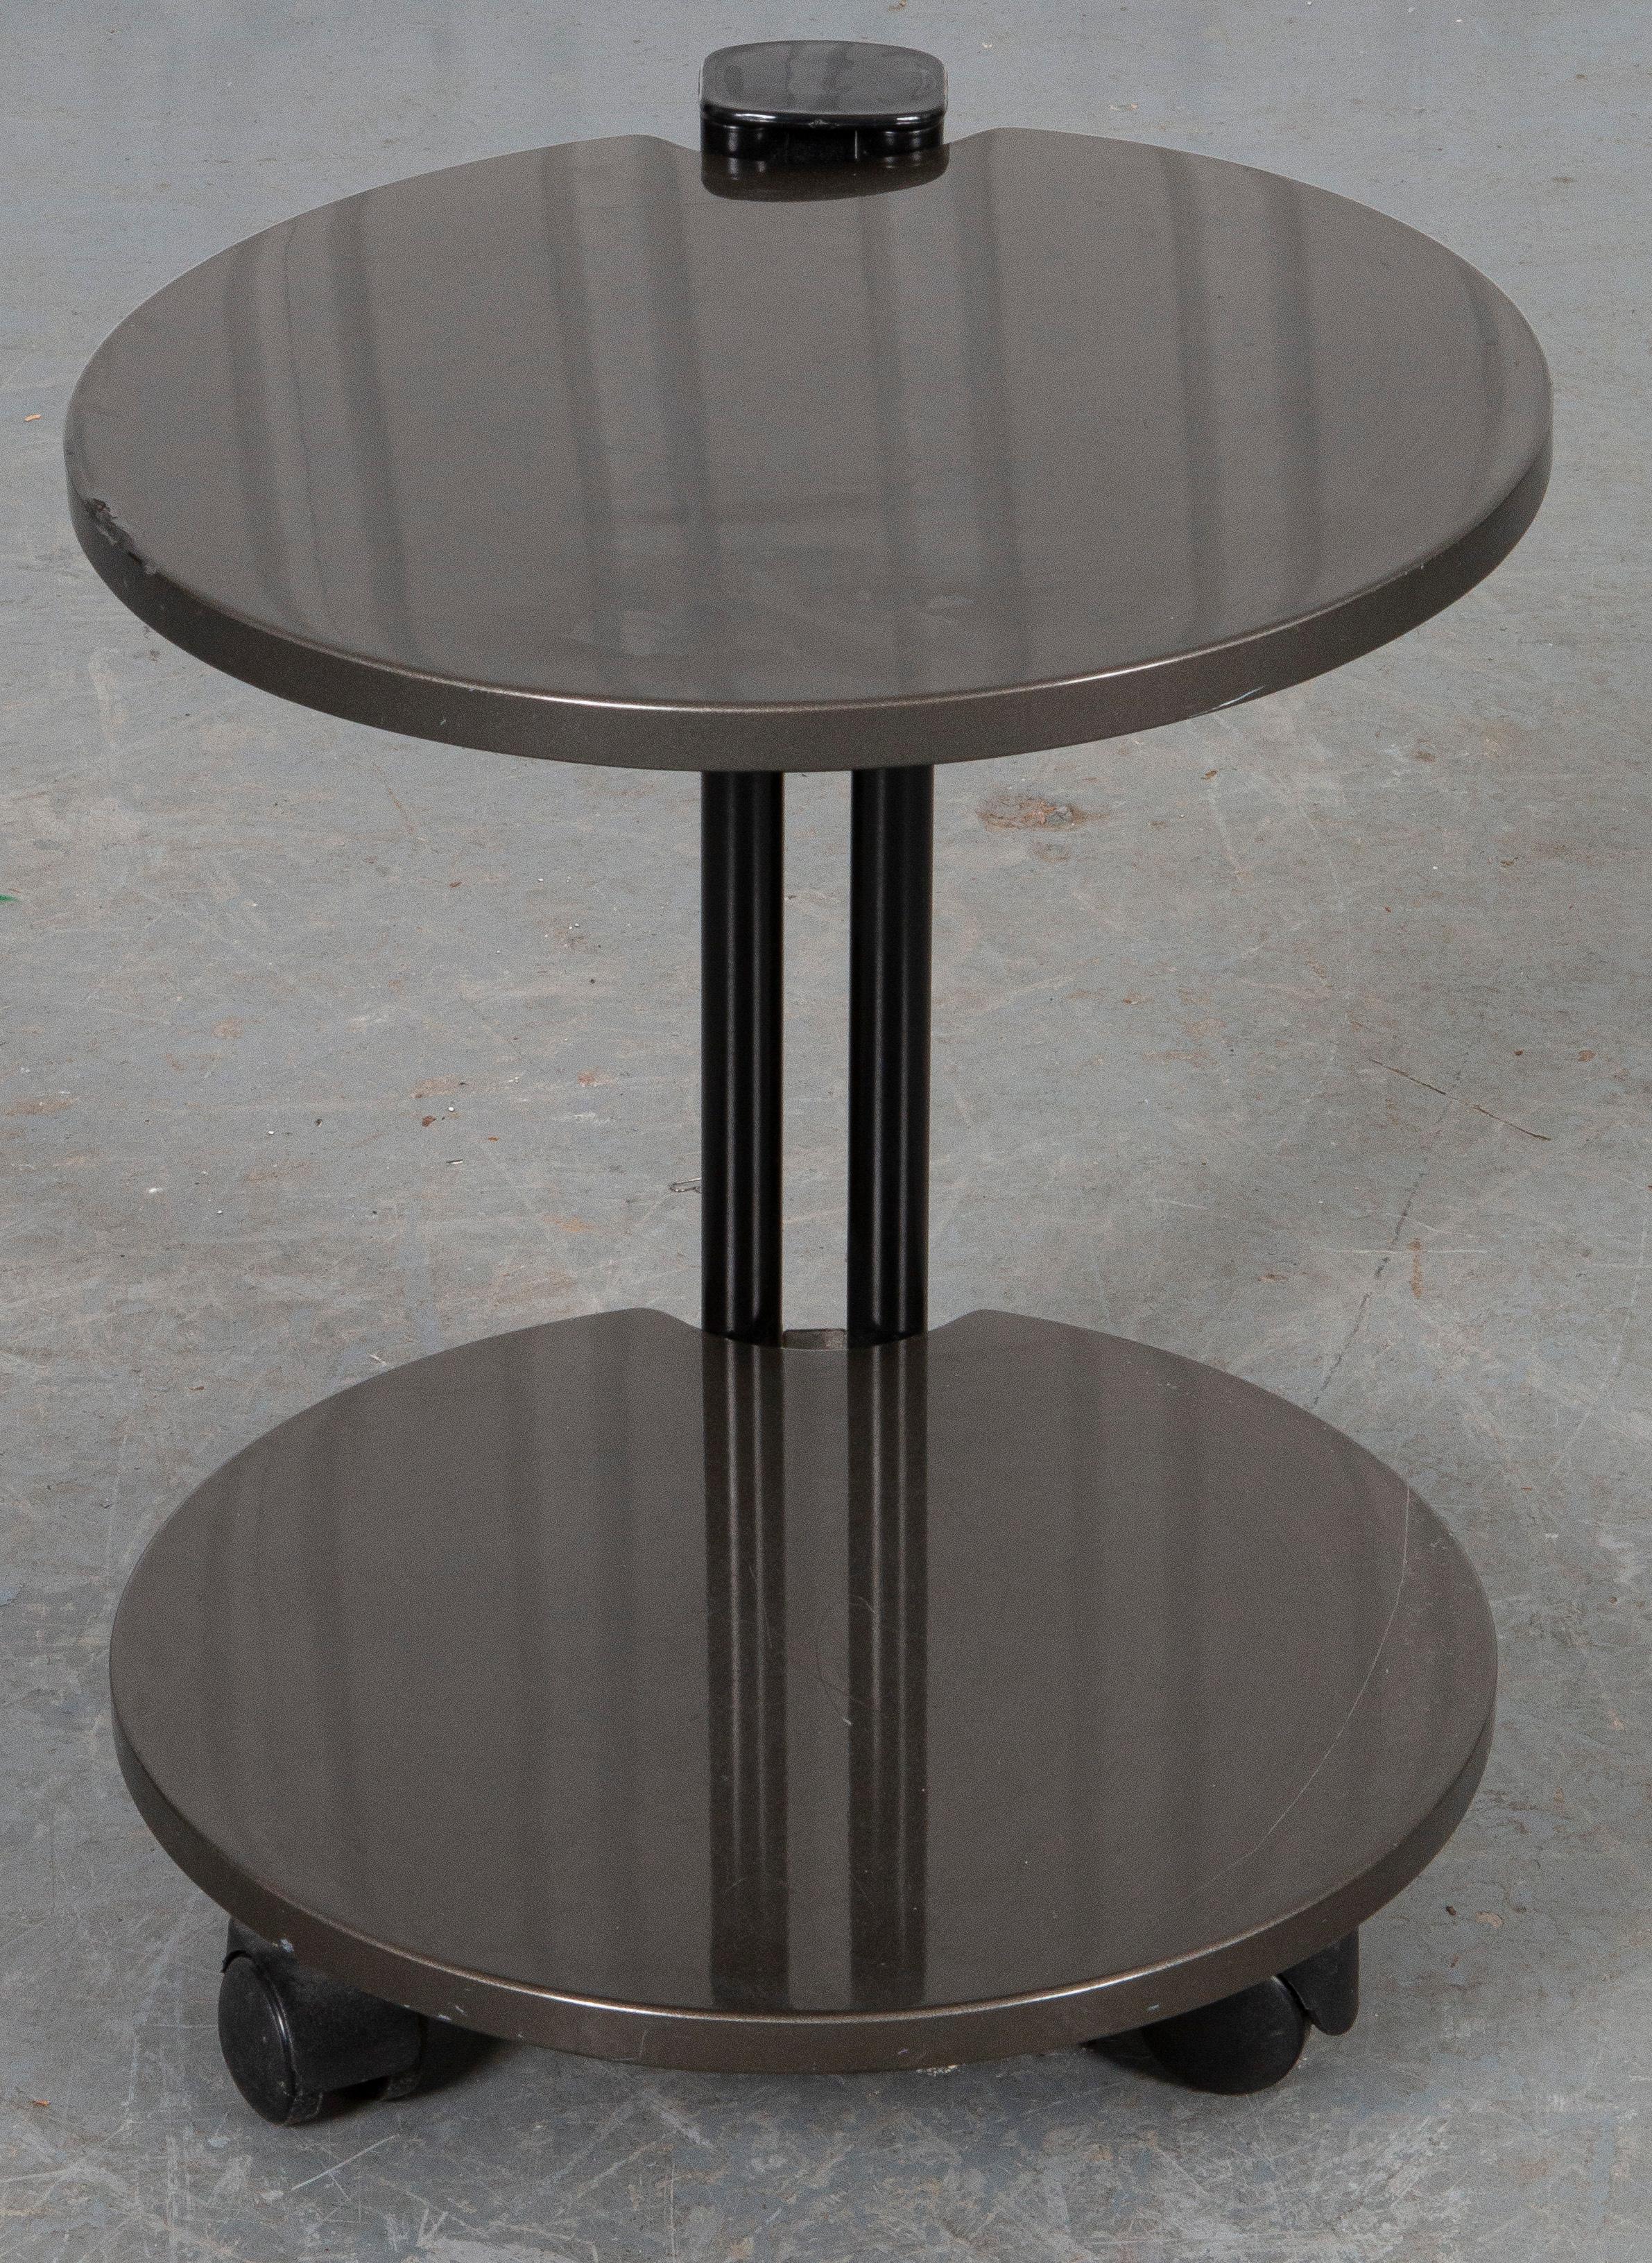 Table d'appoint post-moderne en matériaux mixtes à deux niveaux, le plateau rond et le niveau inférieur étant suspendus par un support en forme de colonne.